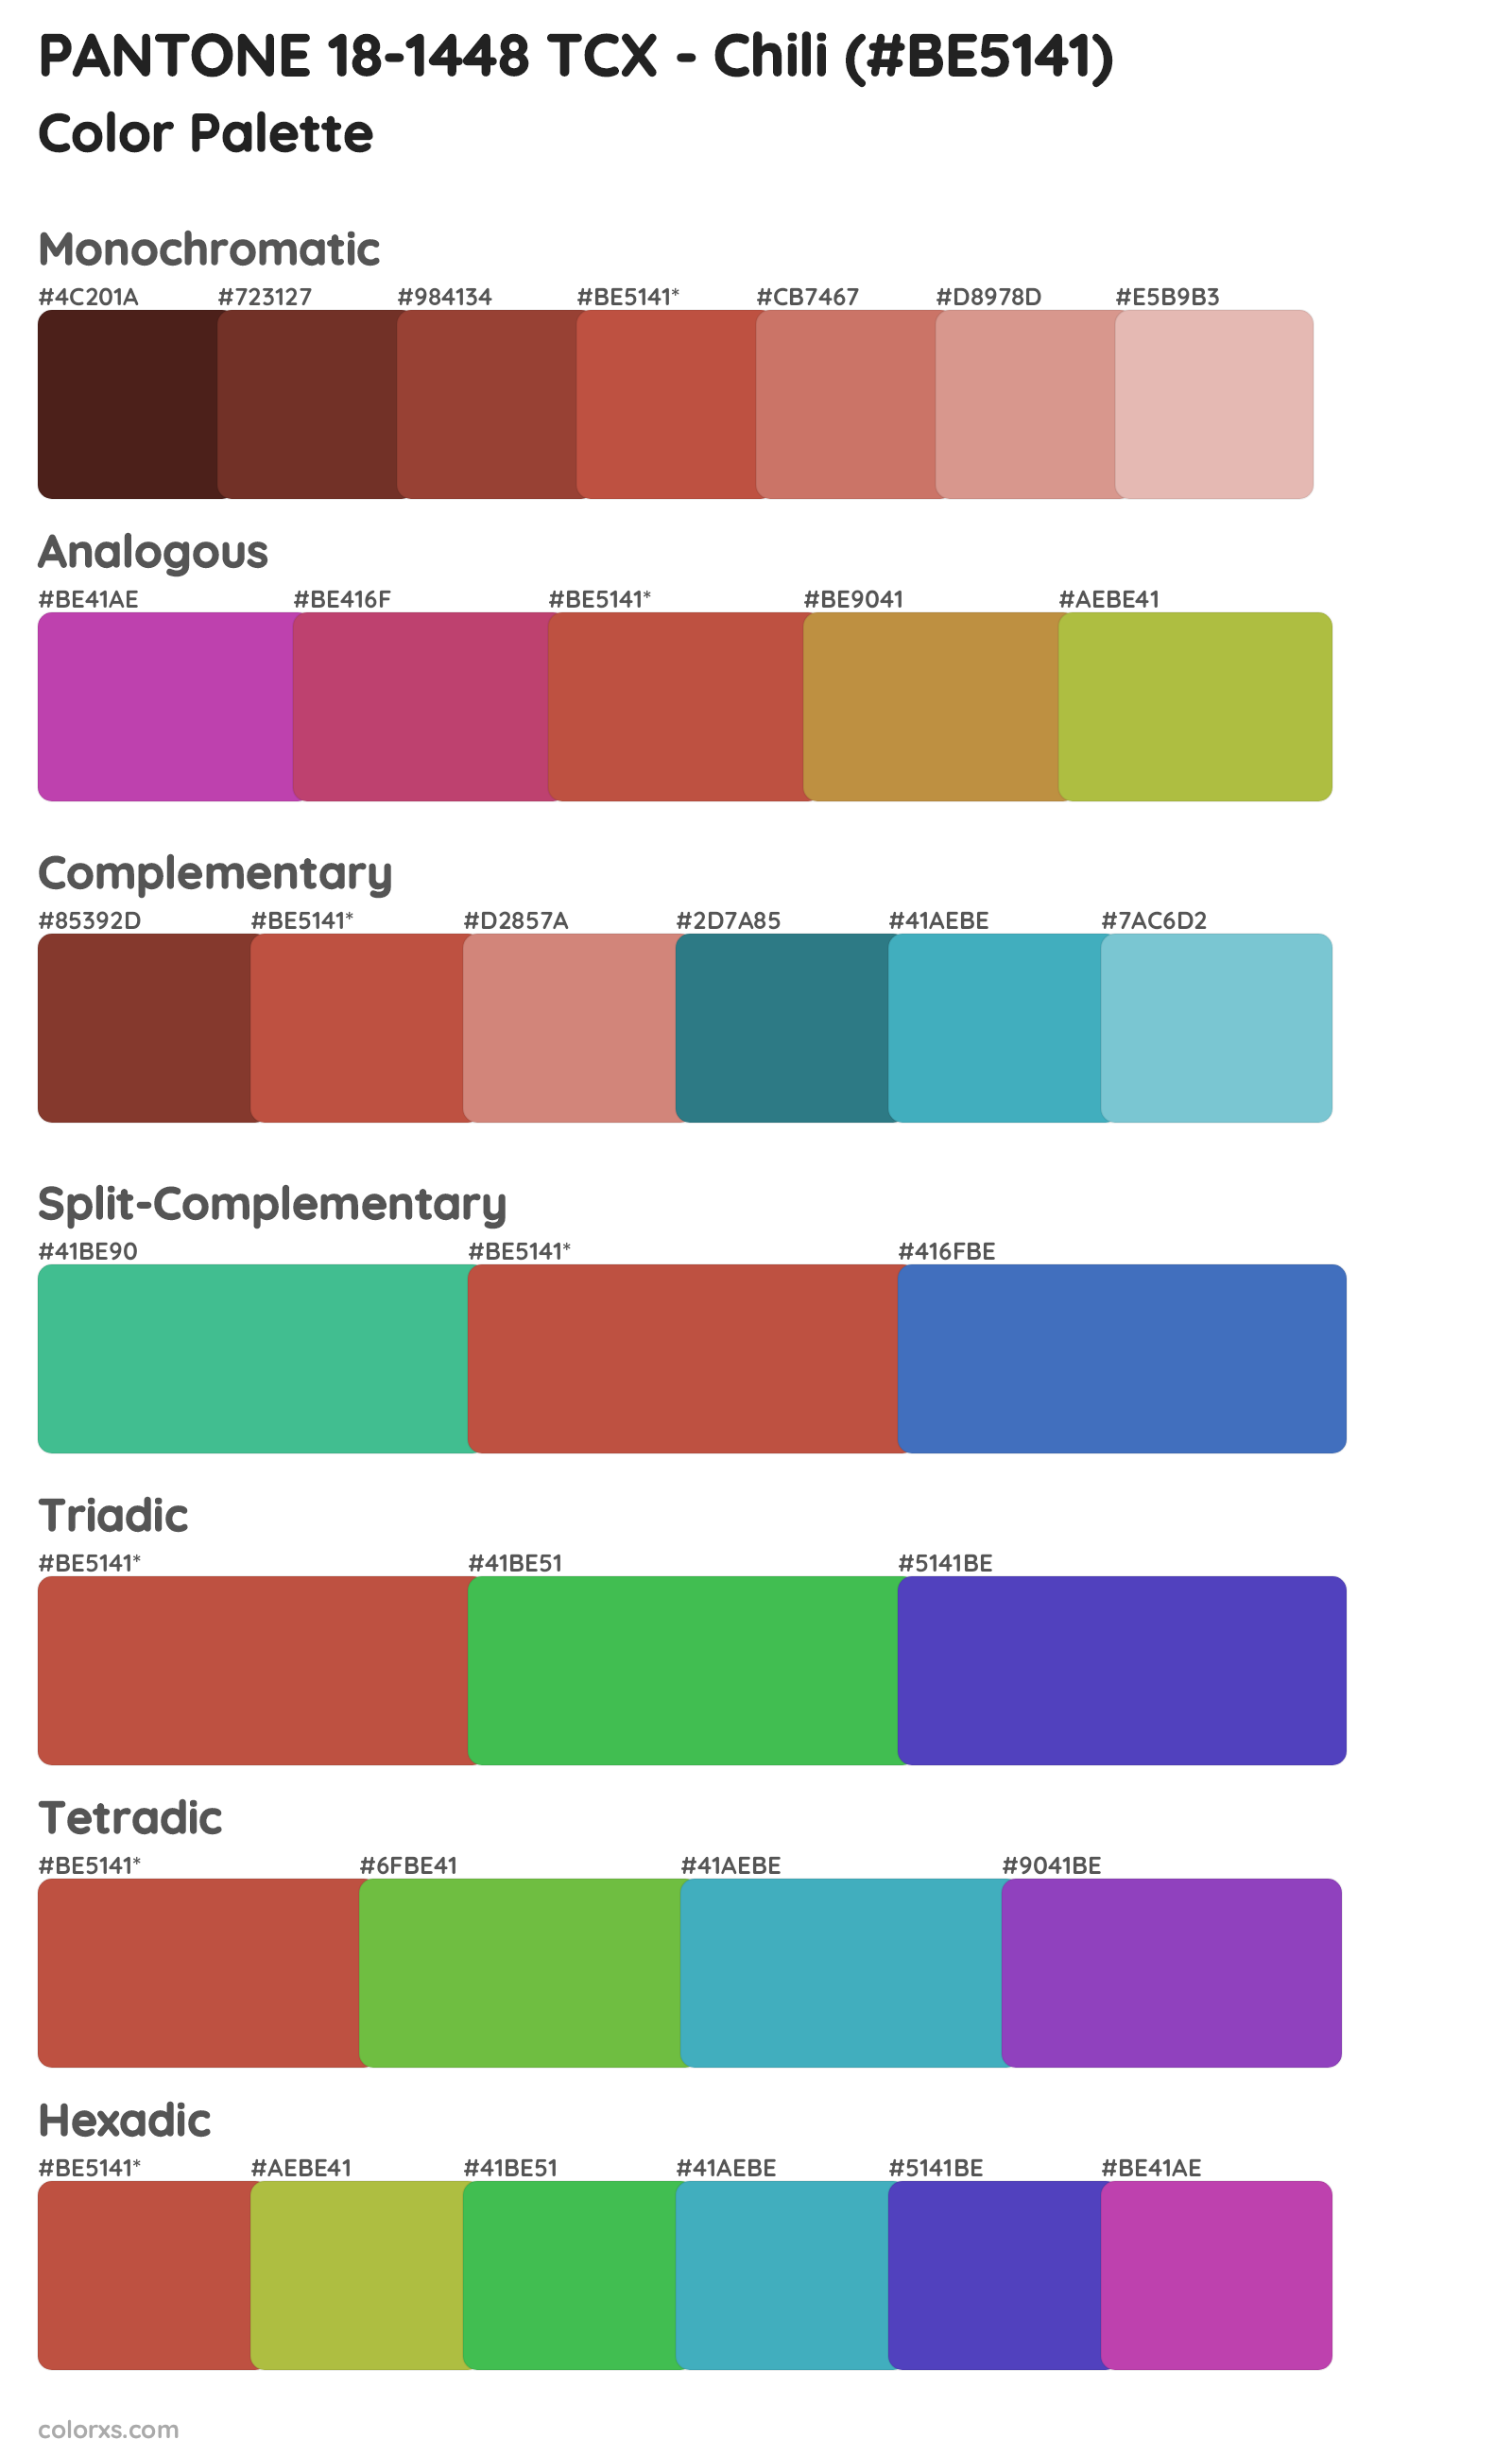 PANTONE 18-1448 TCX - Chili Color Scheme Palettes